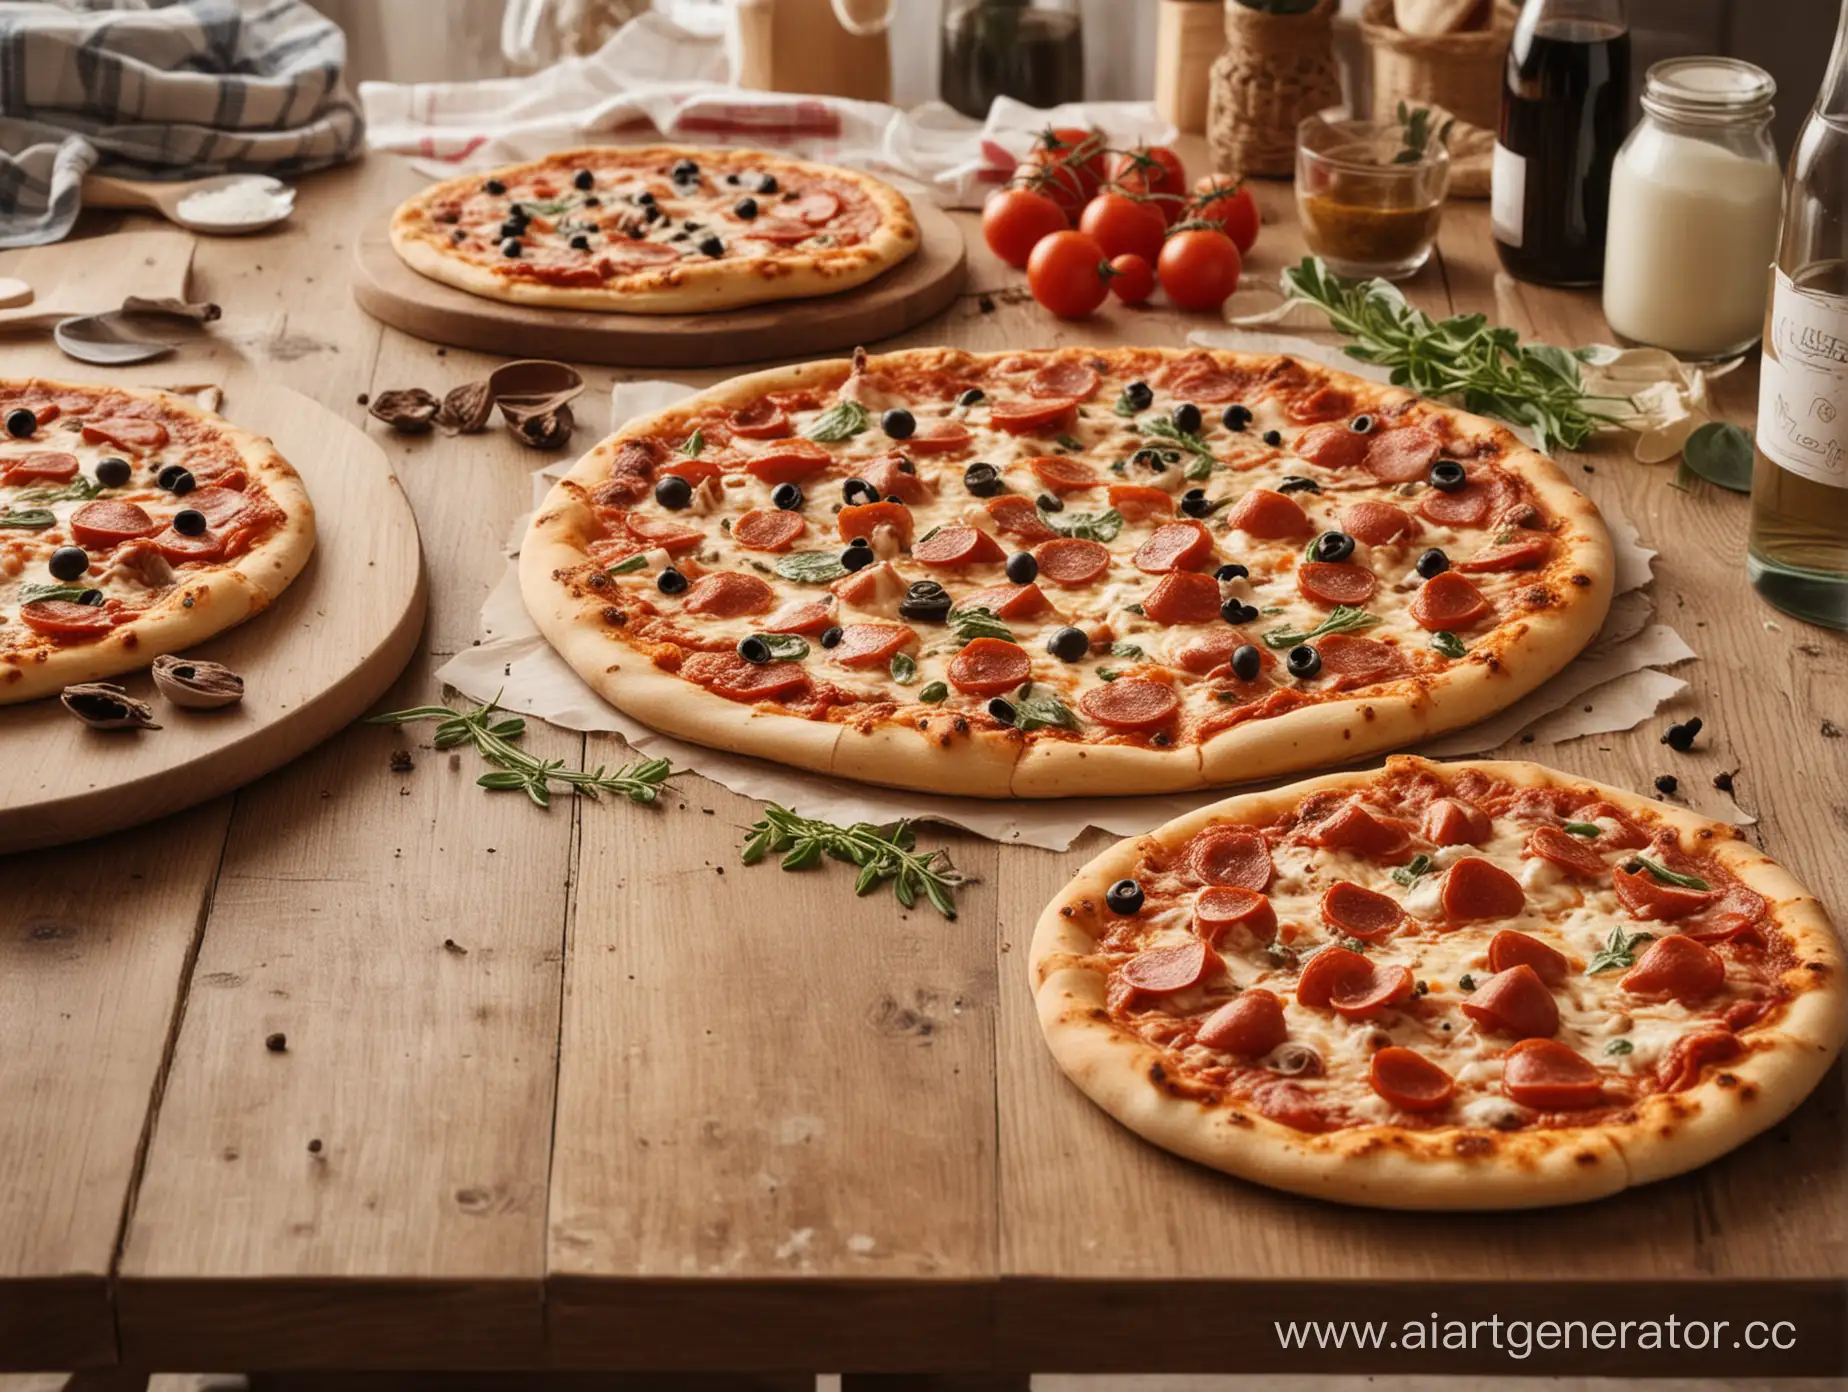 пиццерия, маленькая пицца на большом кухонном столе, вокруг инградиенты